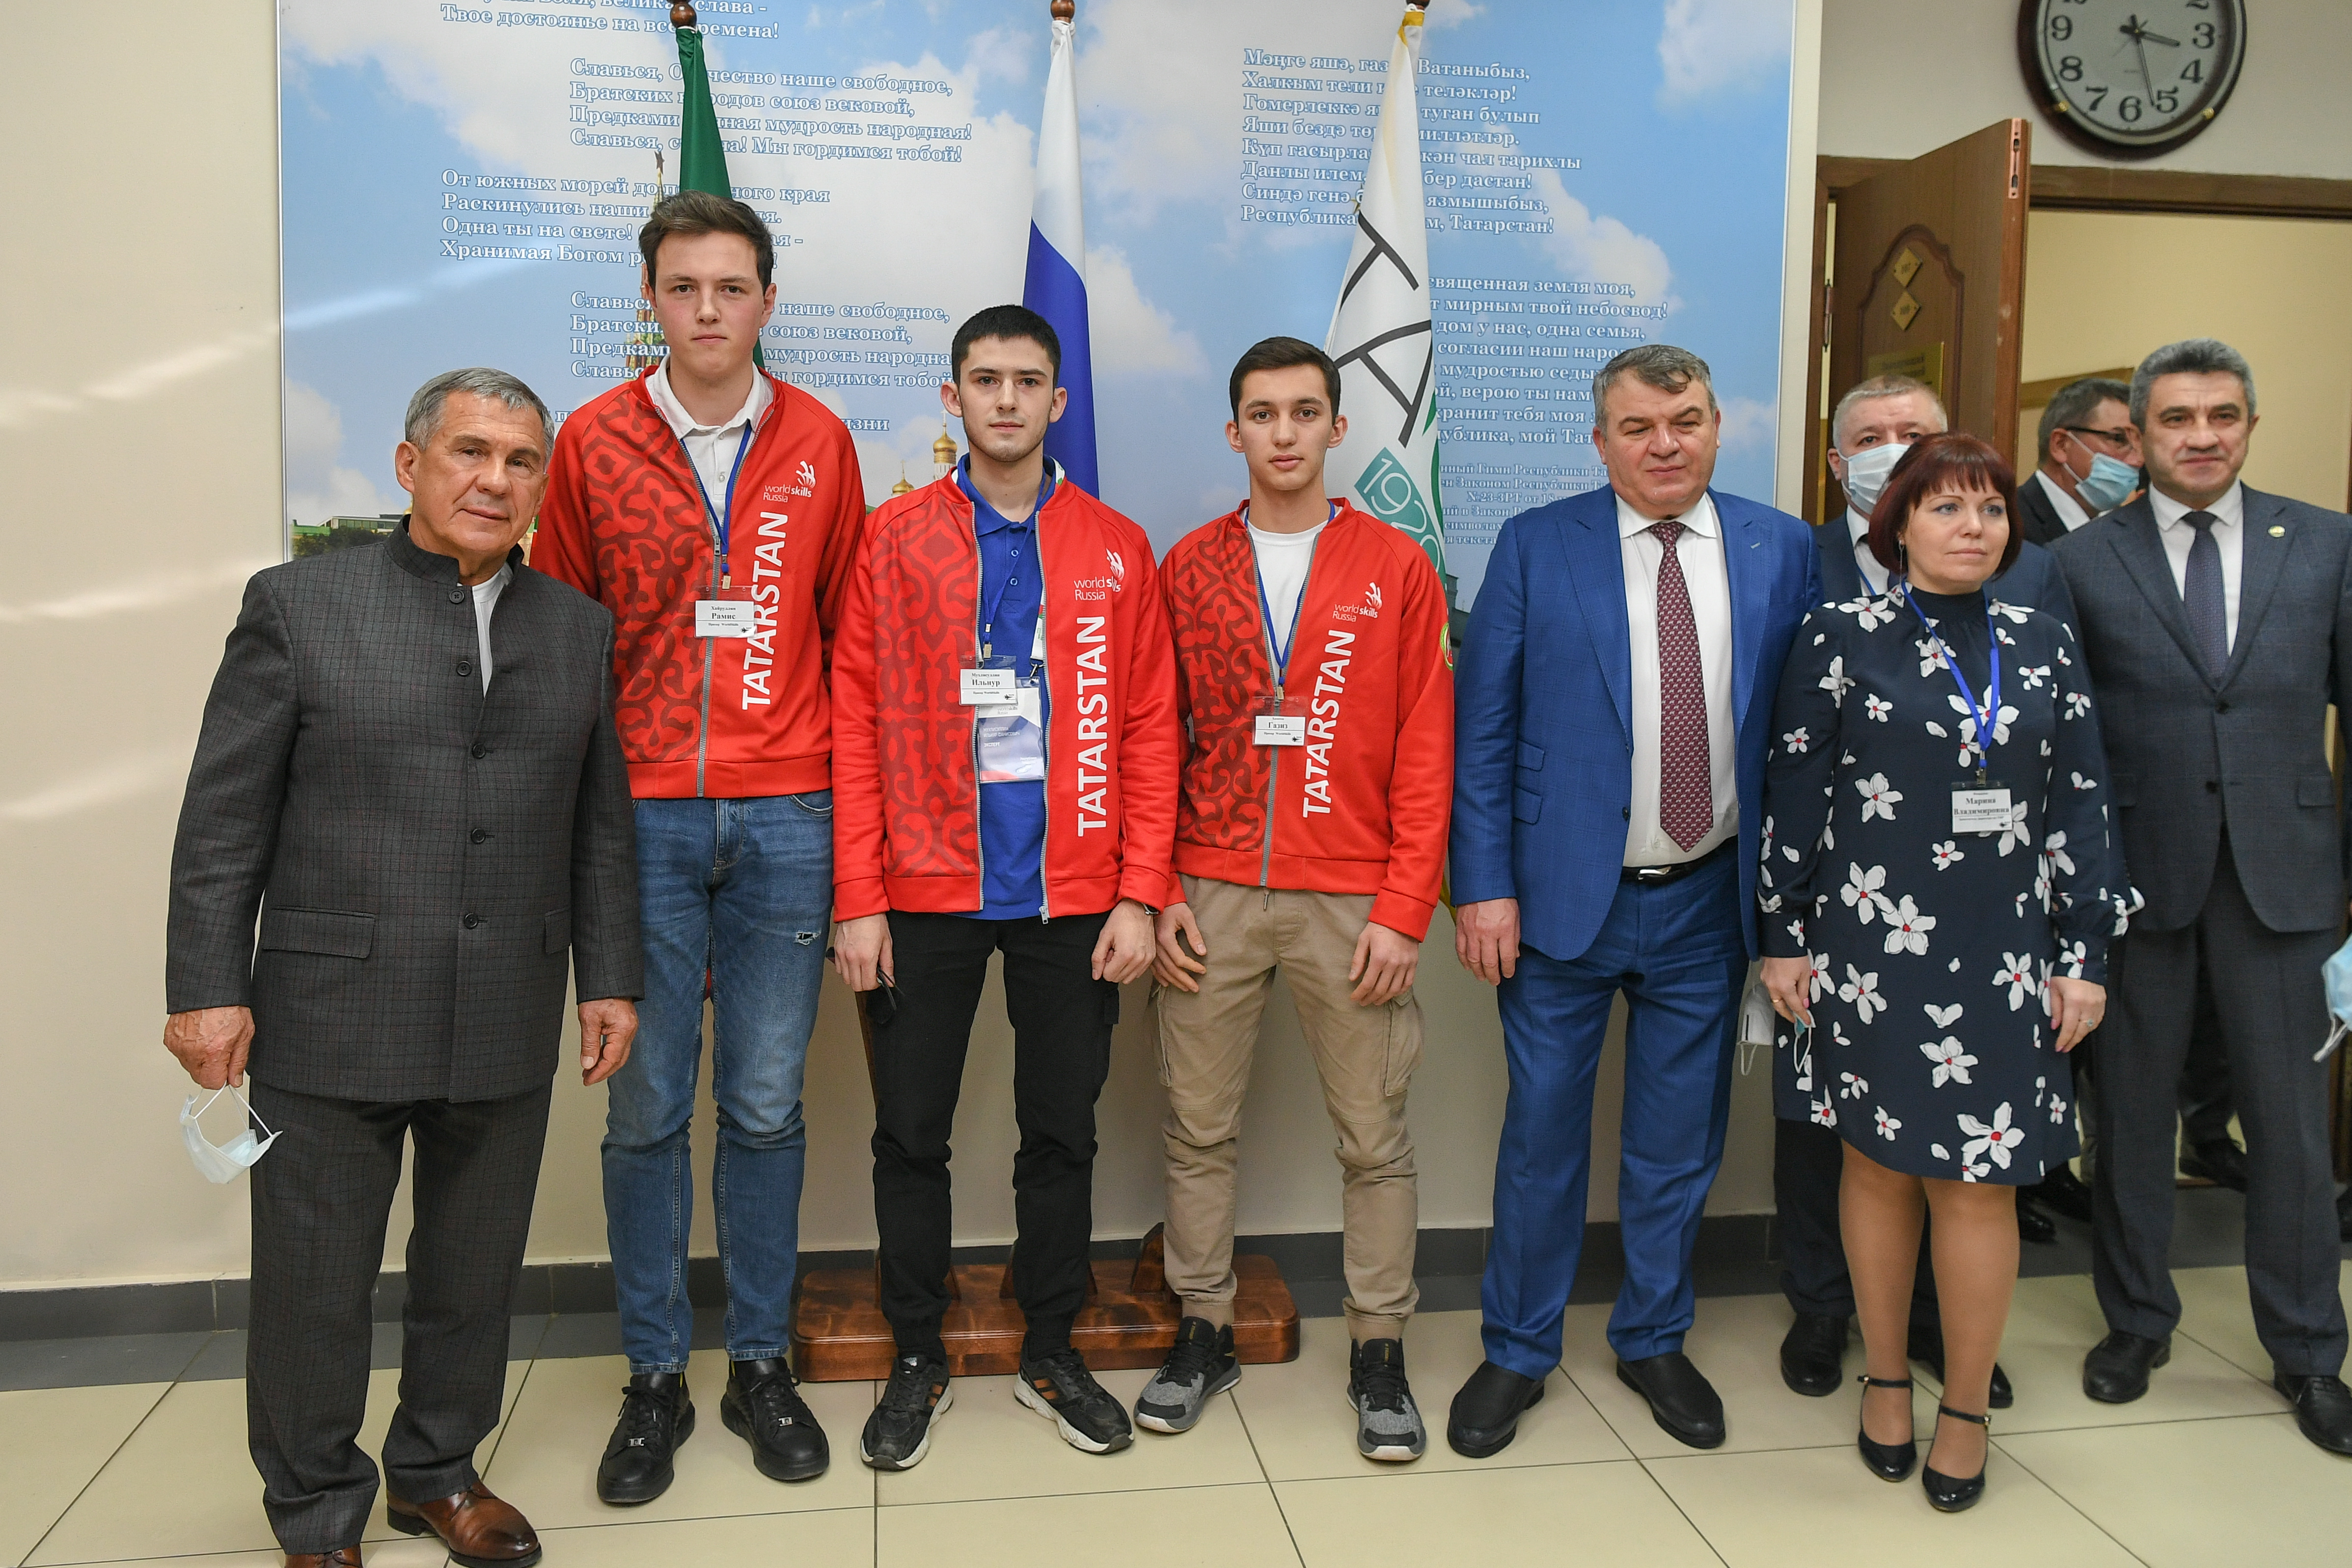 Рустам Минниханов и Анатолий Сердюков посетили региональный чемпионат WorldSkills в Республике Татарстан